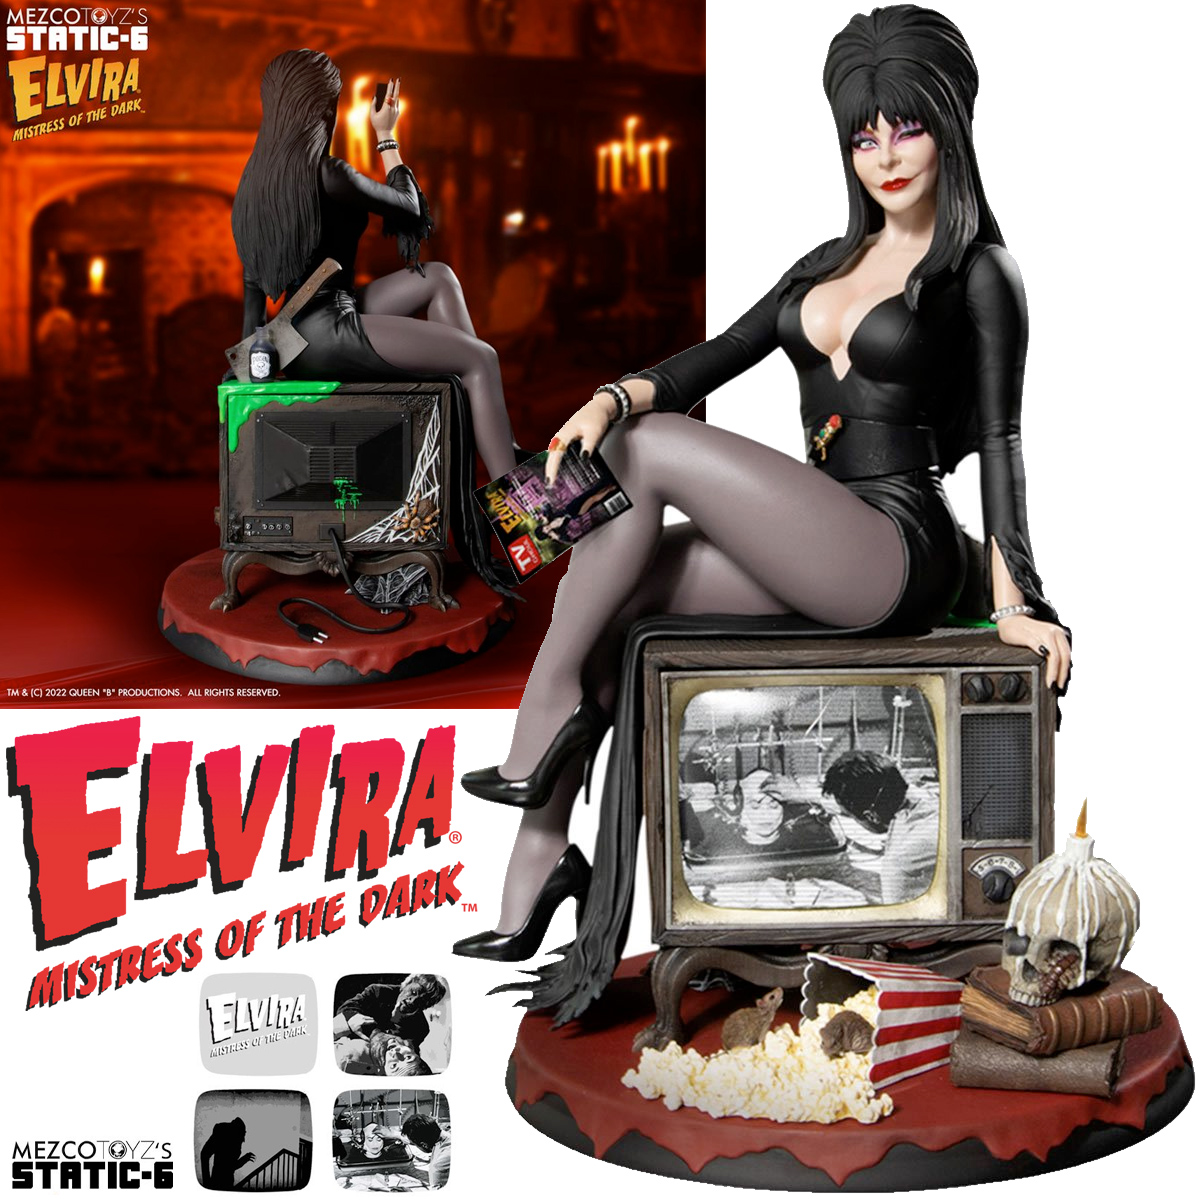 Estátua Elvira, a Rainha das Trevas Static-6 Mezco